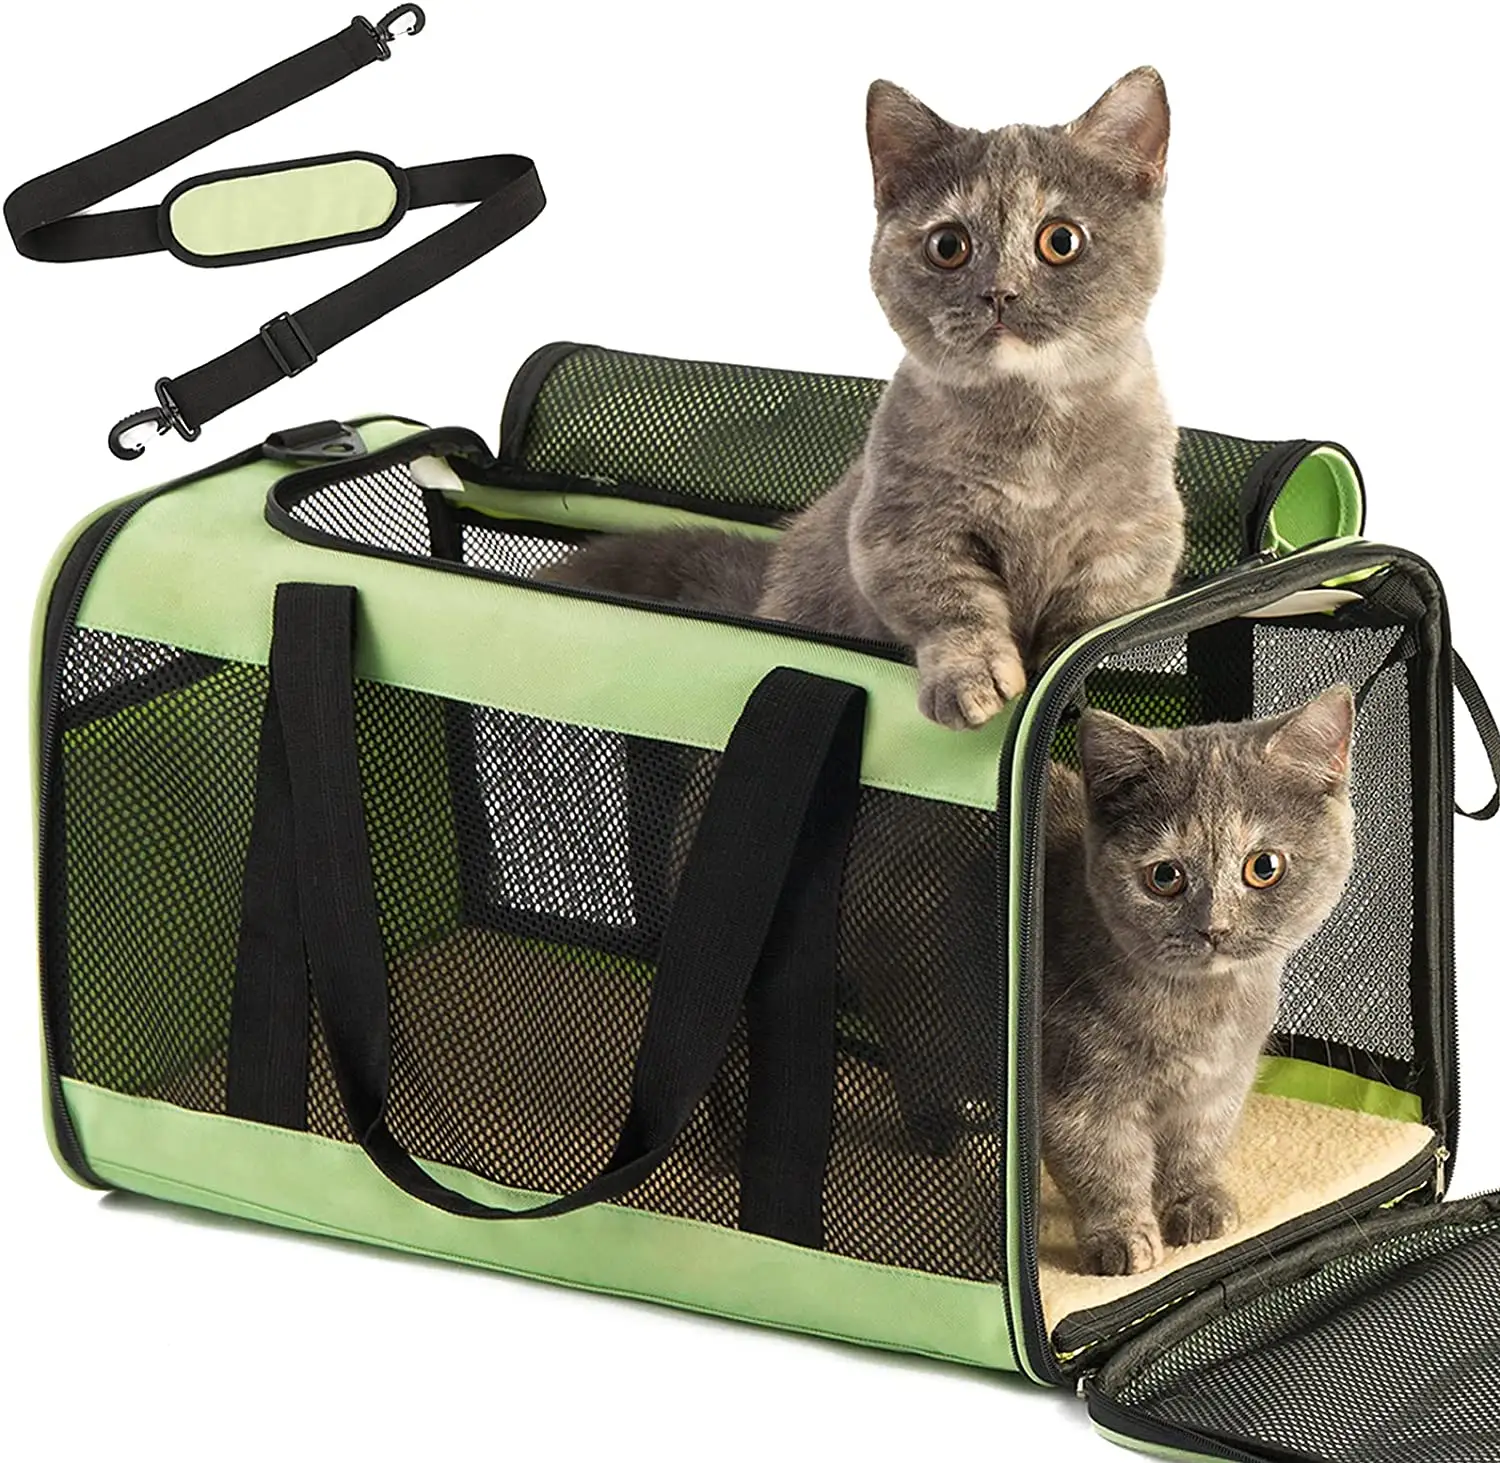 Amazon Bestseller Tragbarer Katzen träger Airline Approved Soft Foldable Dog Carrier Bag Zusammen klappbarer Pet Carrier